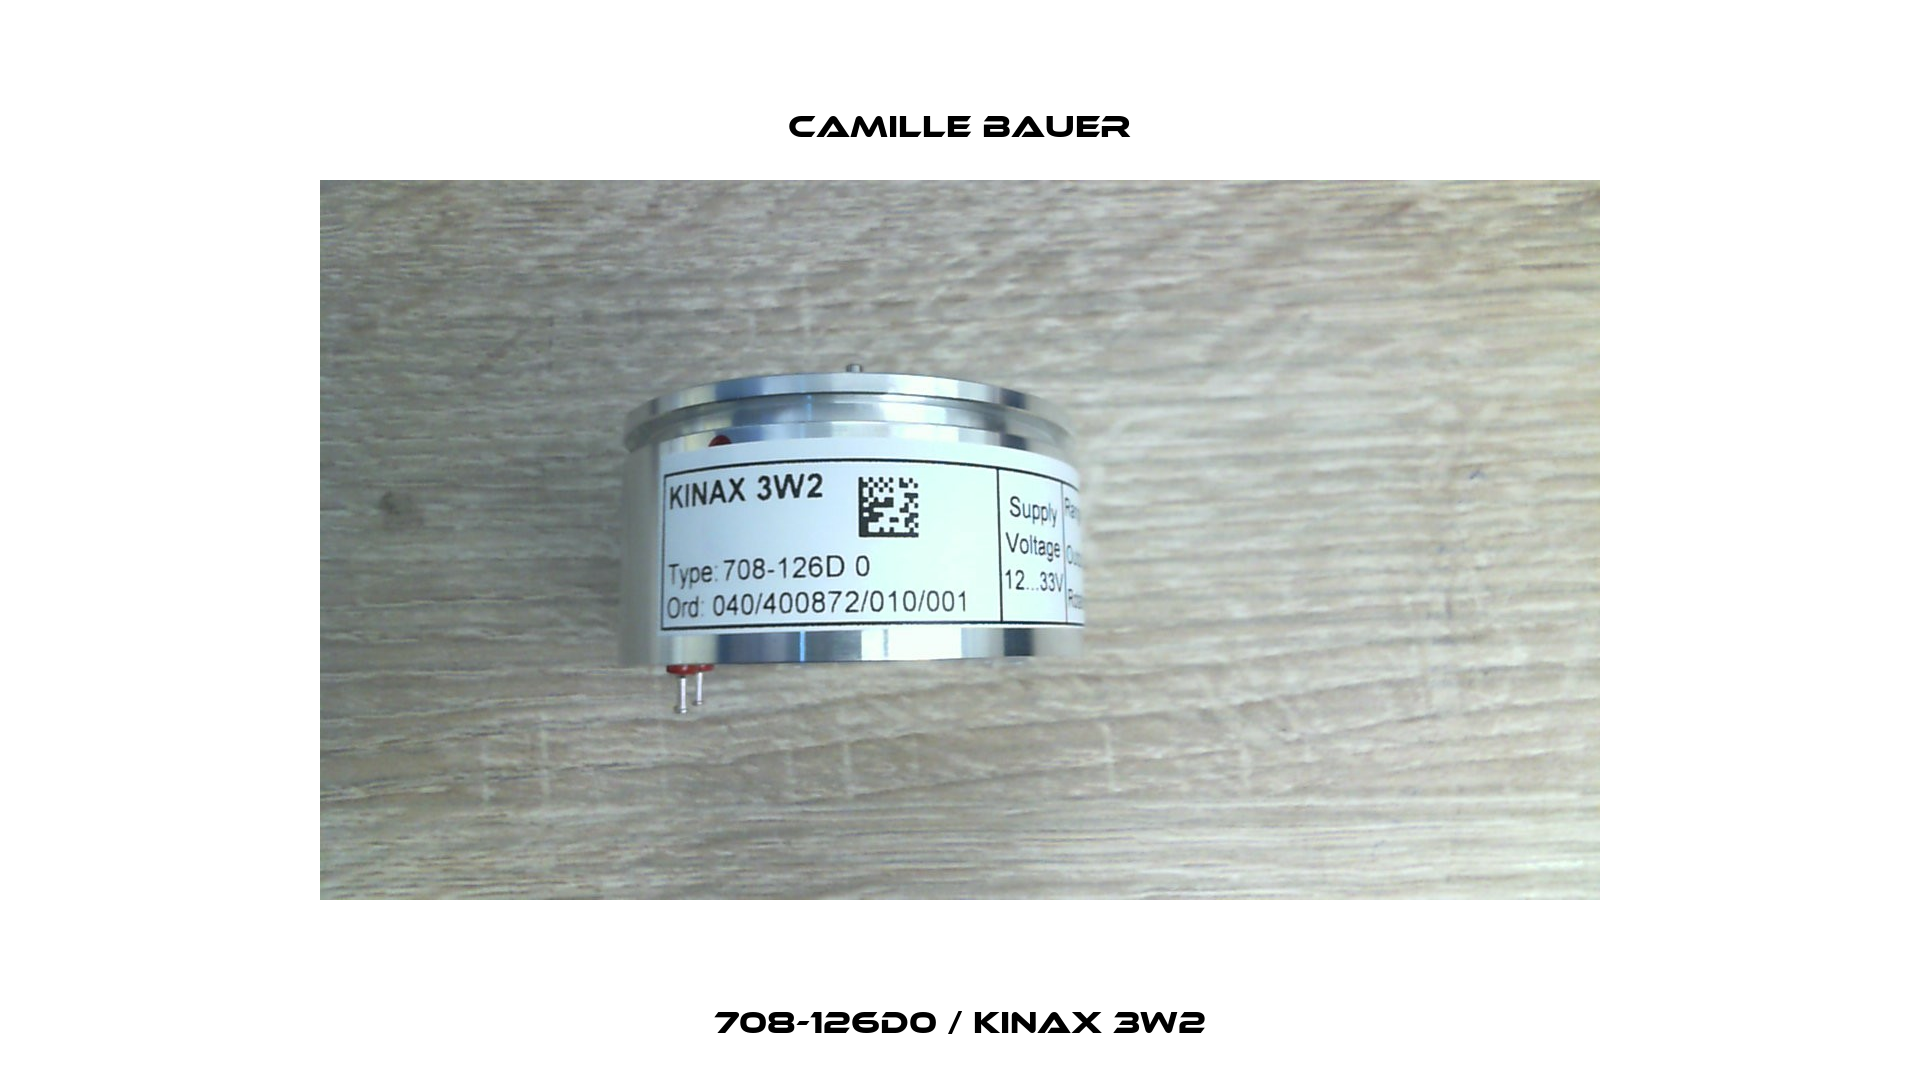 708-126D0 / KINAX 3W2 Camille Bauer